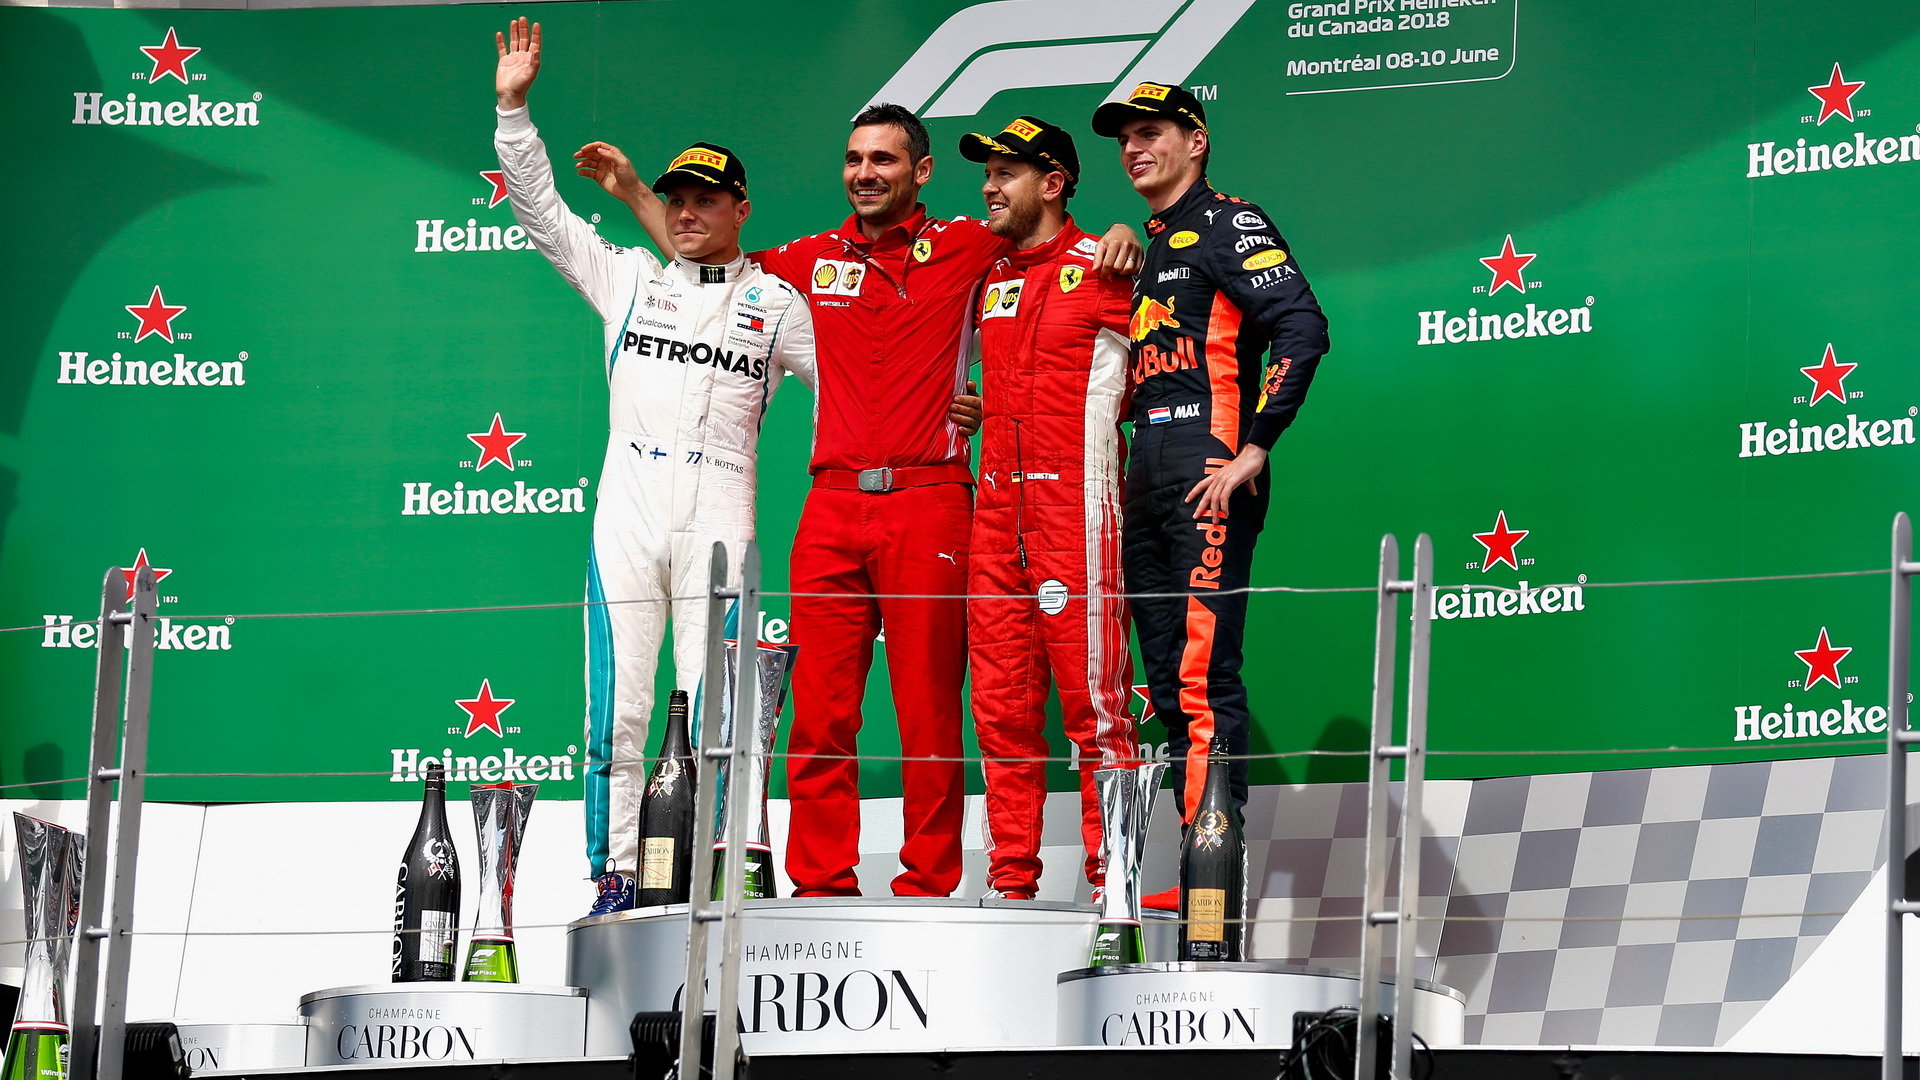 Stupně vítězů po Velké ceně Kanady: Vettel první, Bottas druhý, Hamilton schází